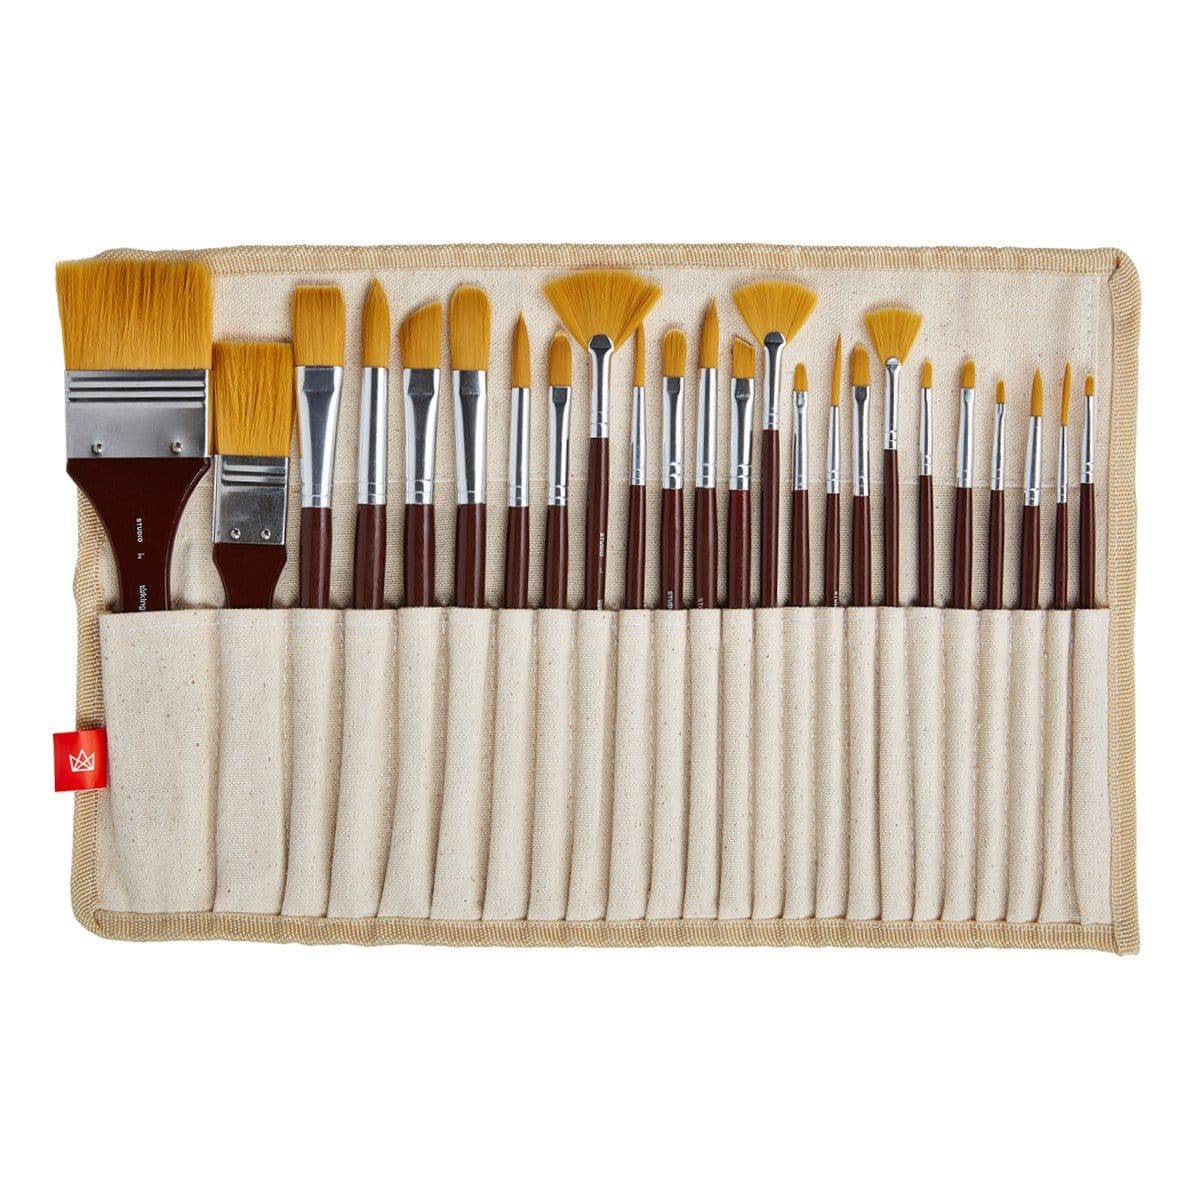 Paint Brushes - 15 Pc Art Brush Set, Short Handle Artist Paintbrushes with  Travel Holder & Free Gift Box